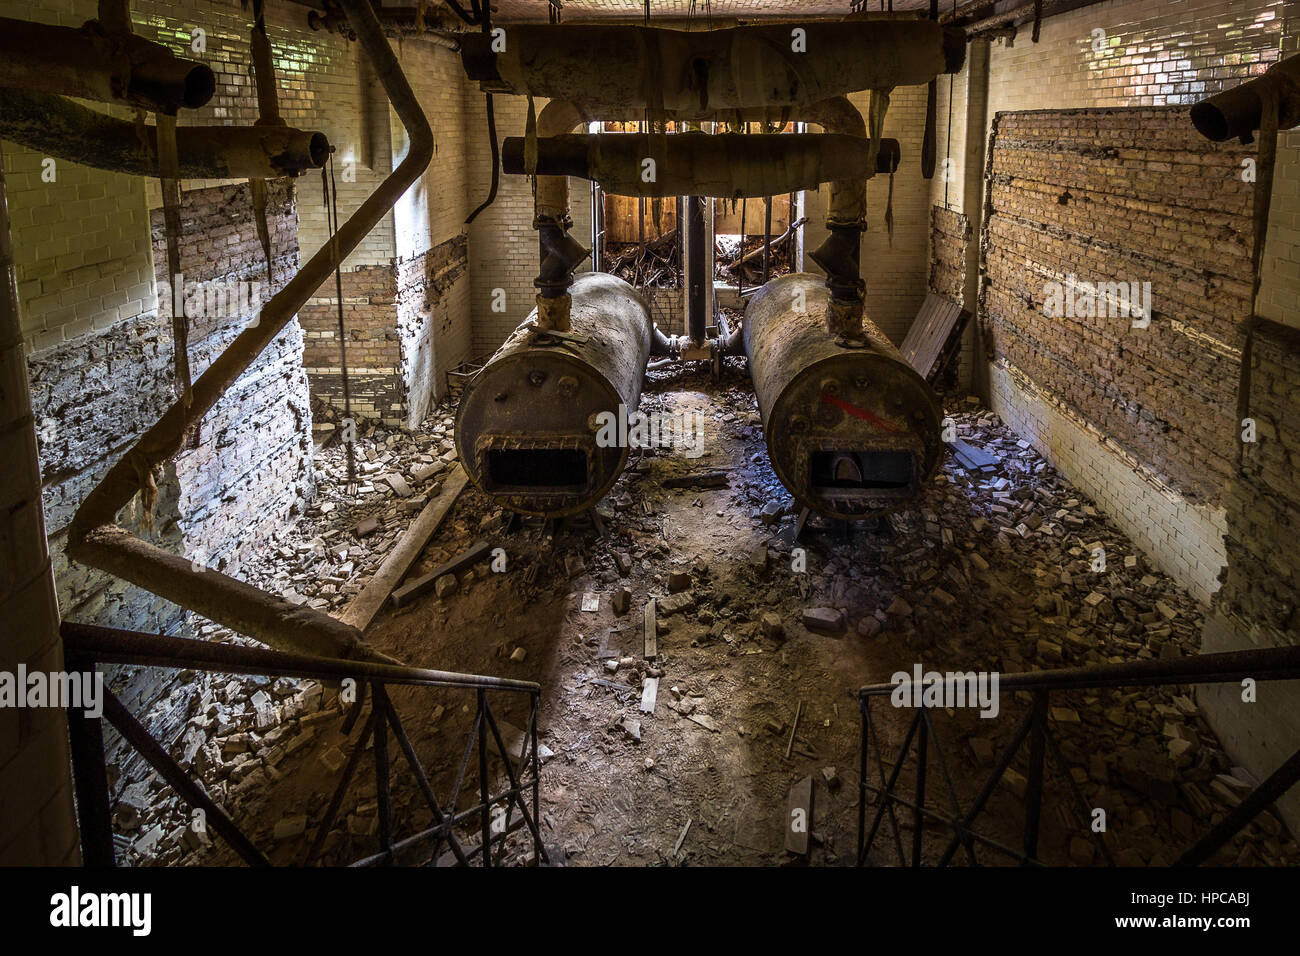 The abandoned clinics of Beelitz near Berlin. Stock Photo